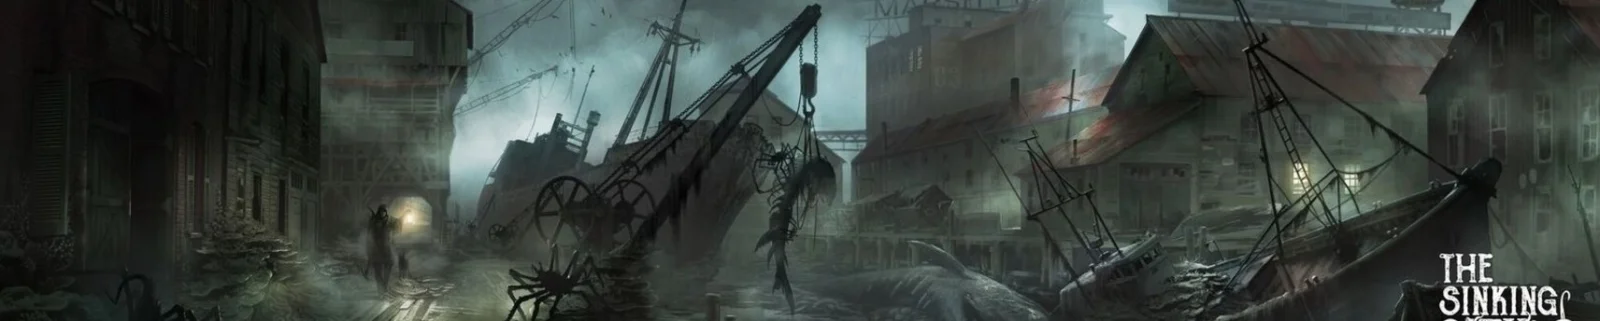 洛式恐怖游戏《沉没之城》更新开发日志